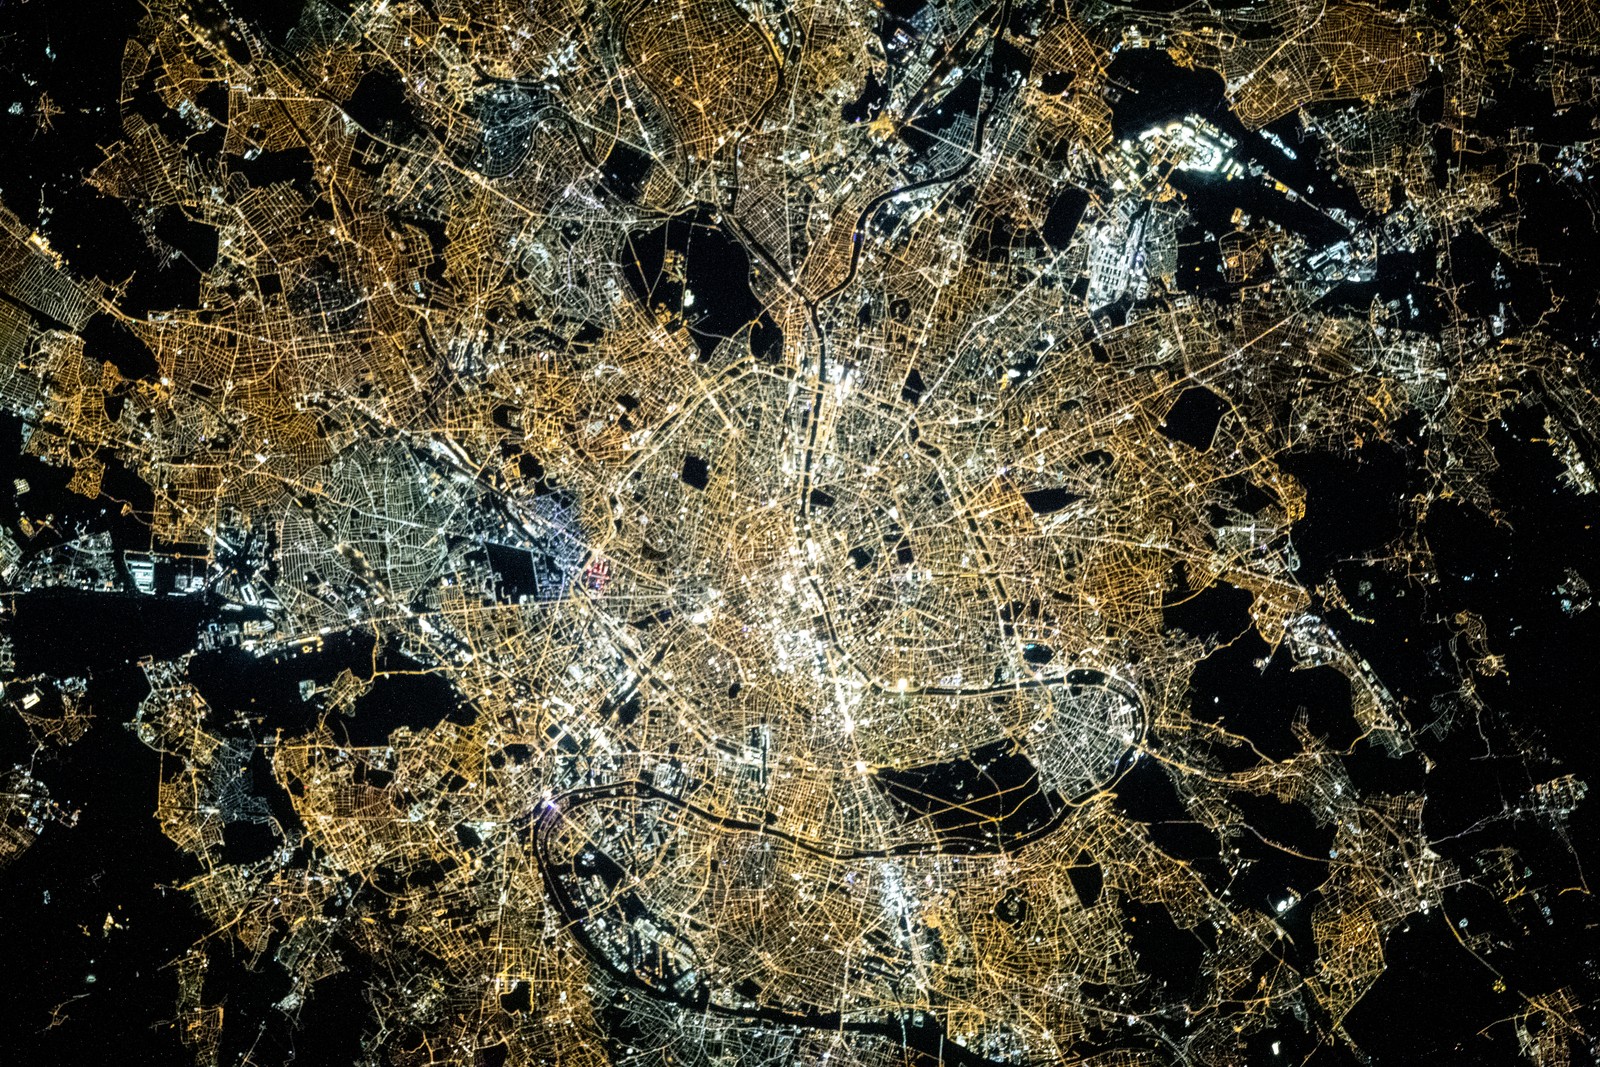 Paris, França, a "Cidade da Luz", com o rio Sena, é retratada enquanto a Estação Espacial Internacional orbitava a cerca de 420 quilômetros do solo em 25 de novembro de 2020